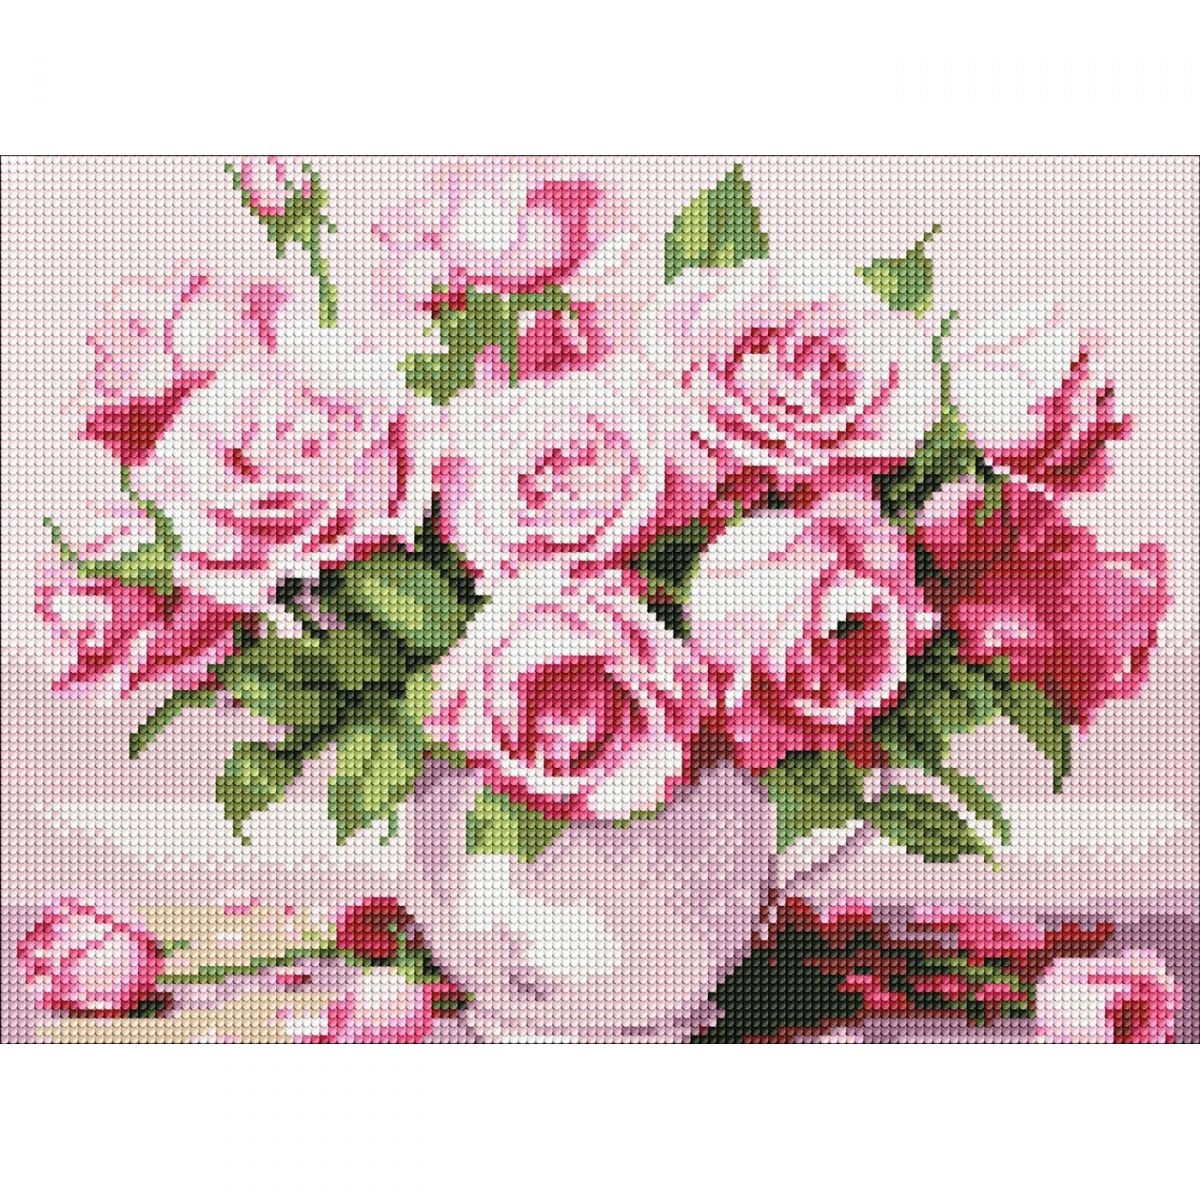 Алмазная мозаика "Розовые розы" 30х40 см